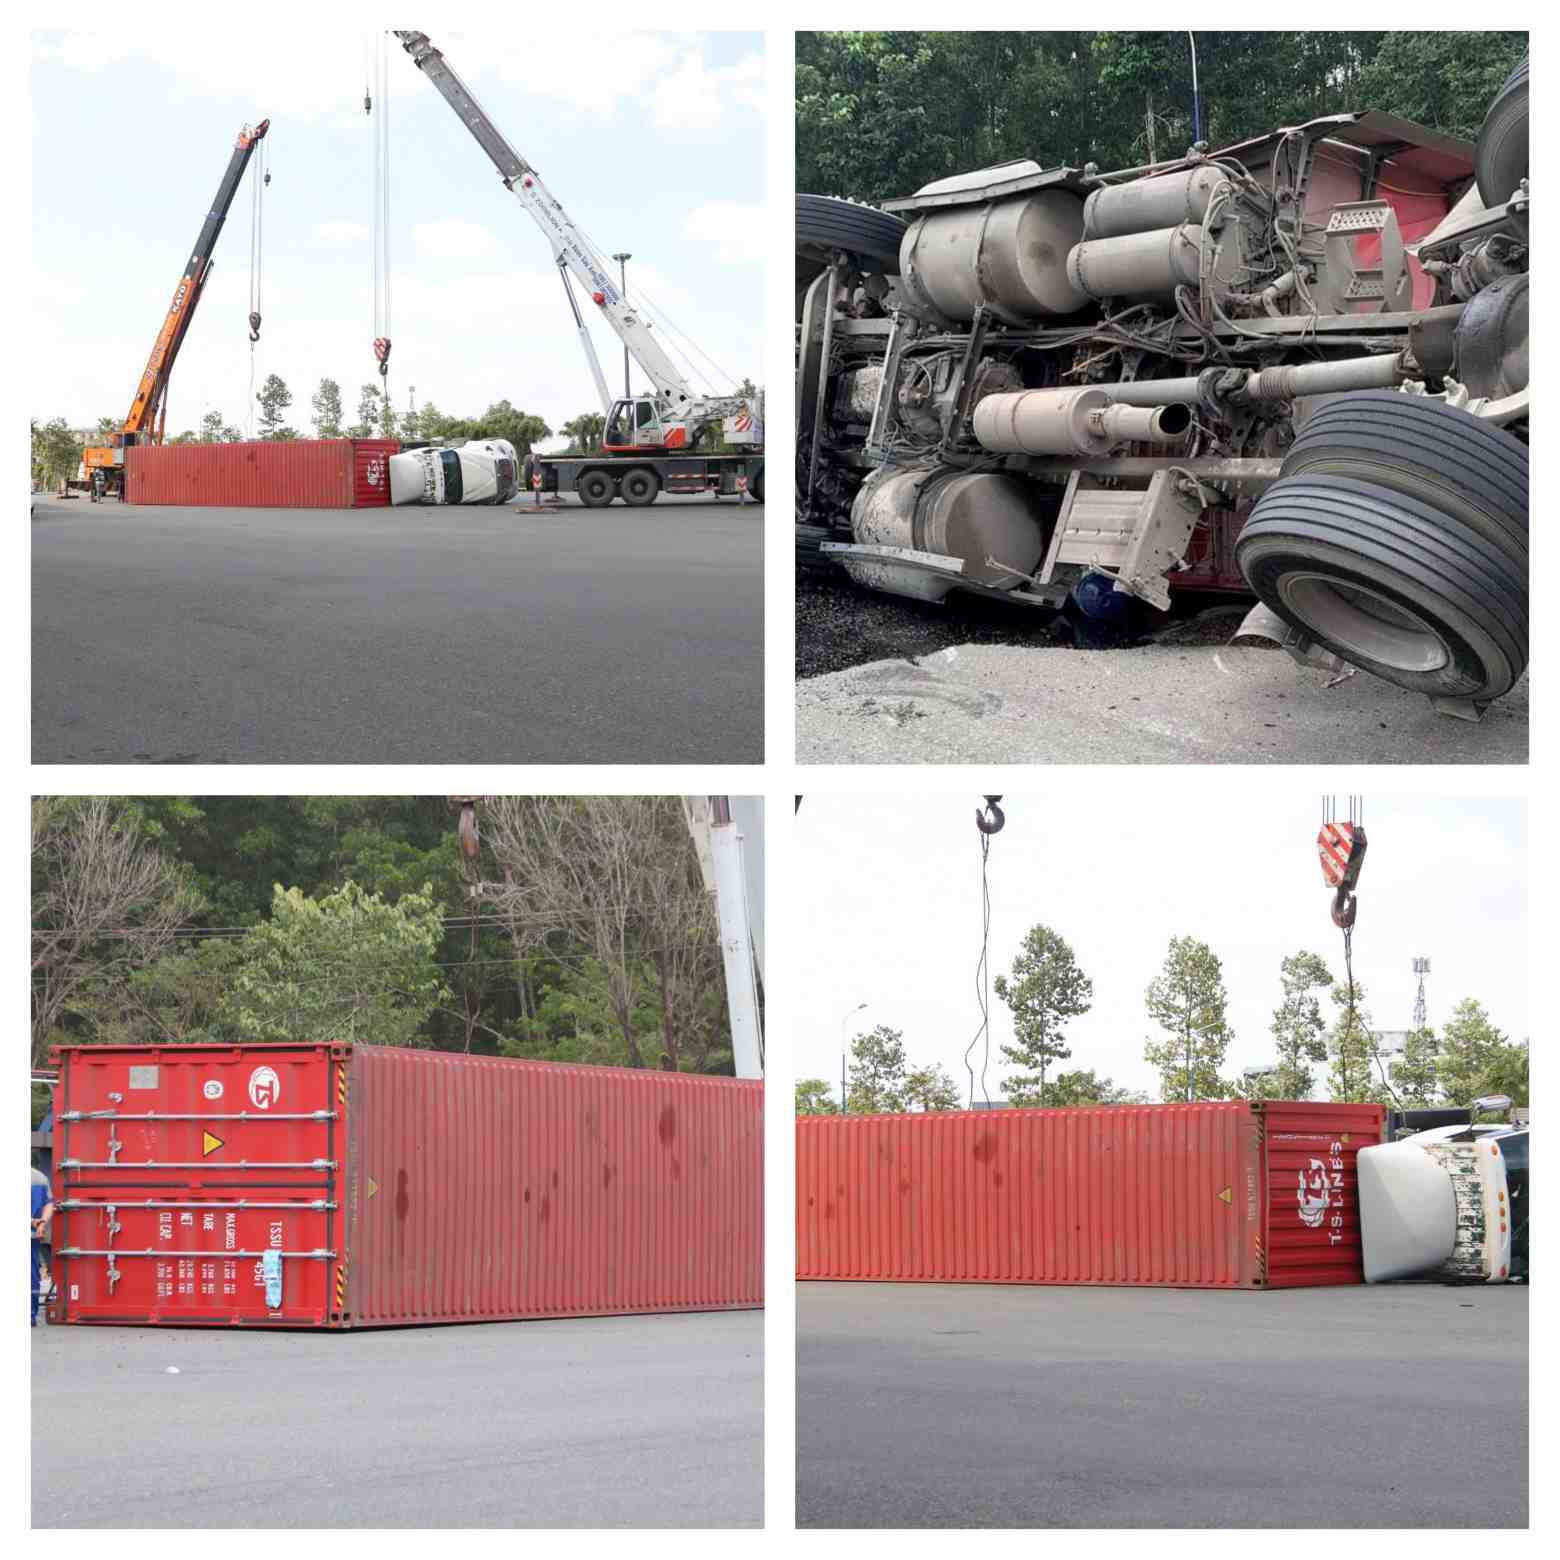 Đây là những hình ảnh xe container chở hàng hoa gặp nạn ở khu vực vòng xay Mỹ Phước 3 trên đường Mỹ Phước Tân Vạn đoạn qua phường Thới Hòa, thị xã Bến Cát, tỉnh Bình Dương.